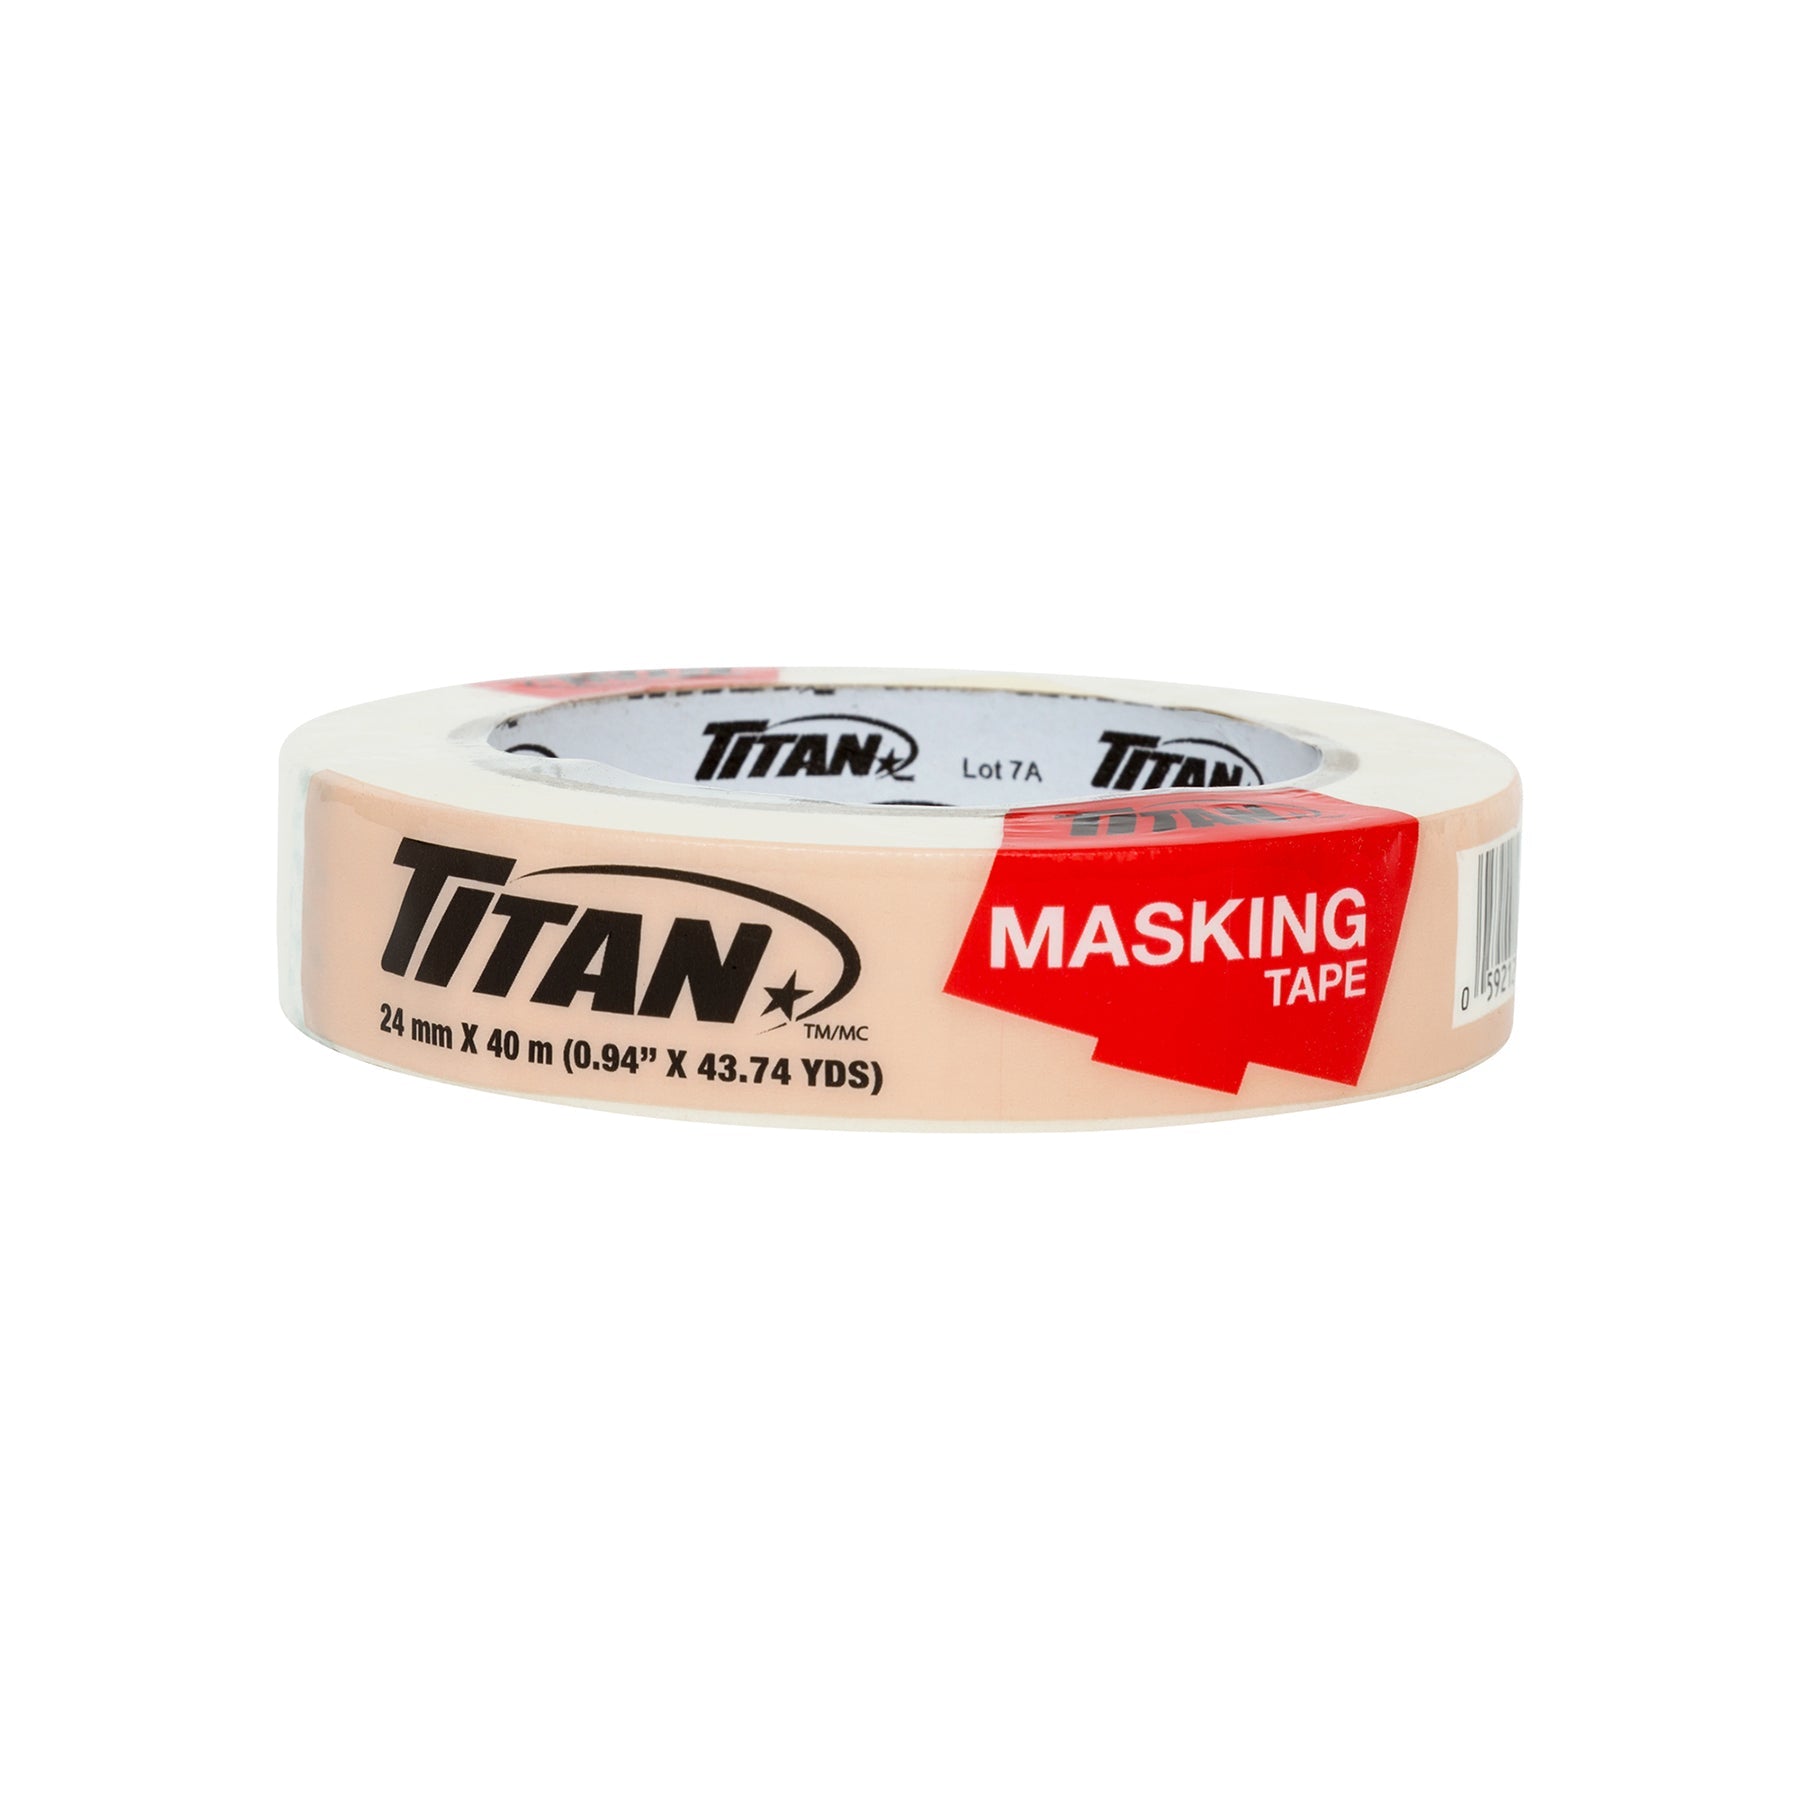 Titan Masking Tape 0.9in x 131.2ft (24mm x 40m)